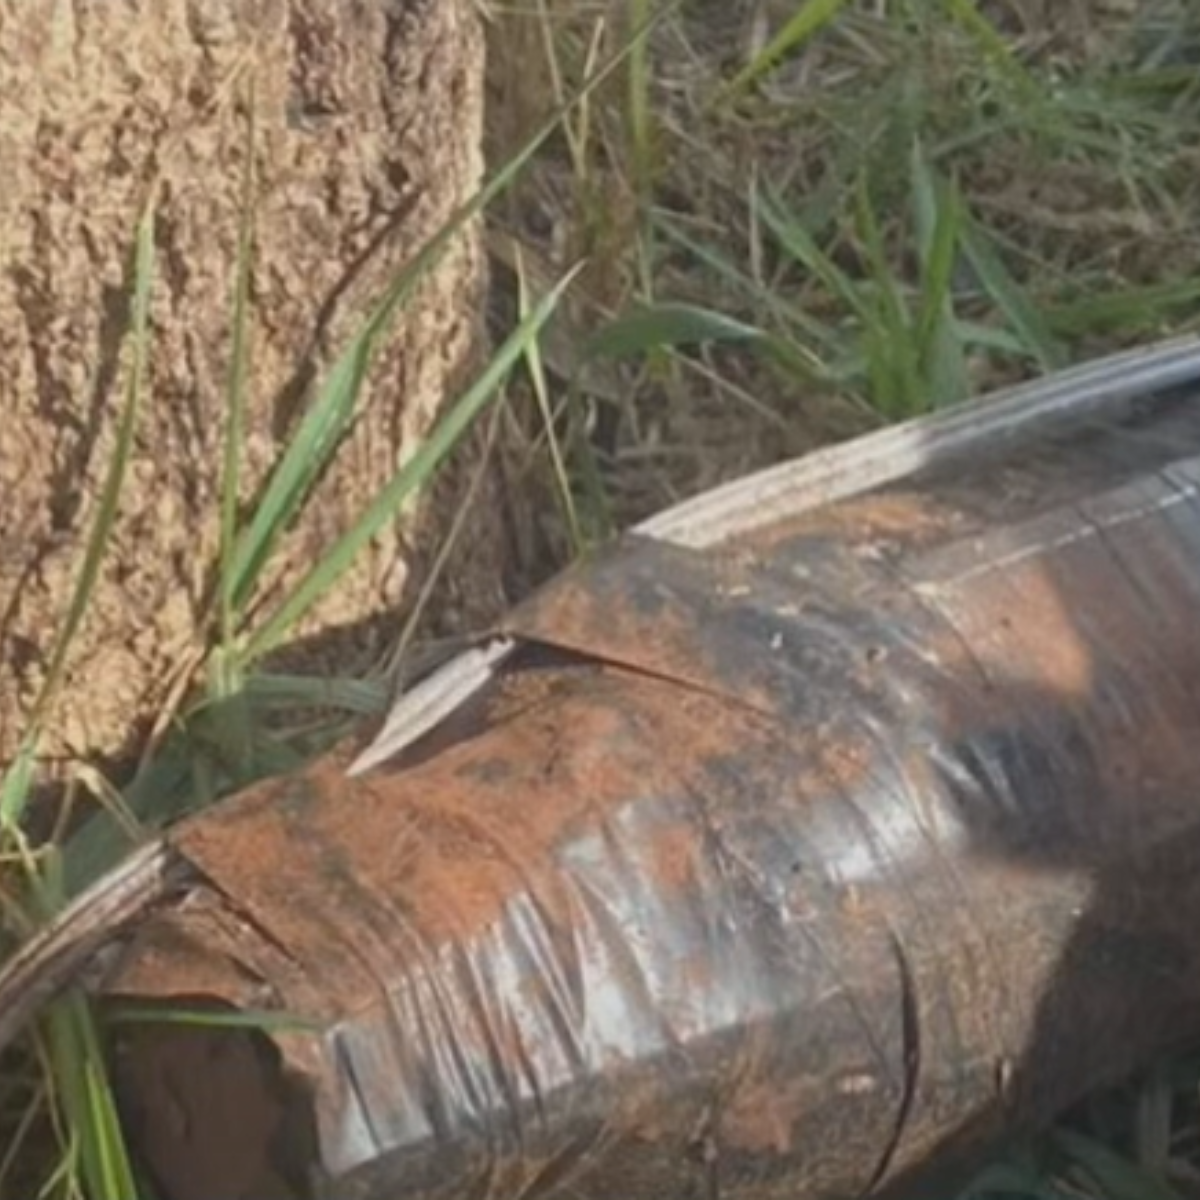 Esquadrão antibombas explode artefato suspeito no norte do PR